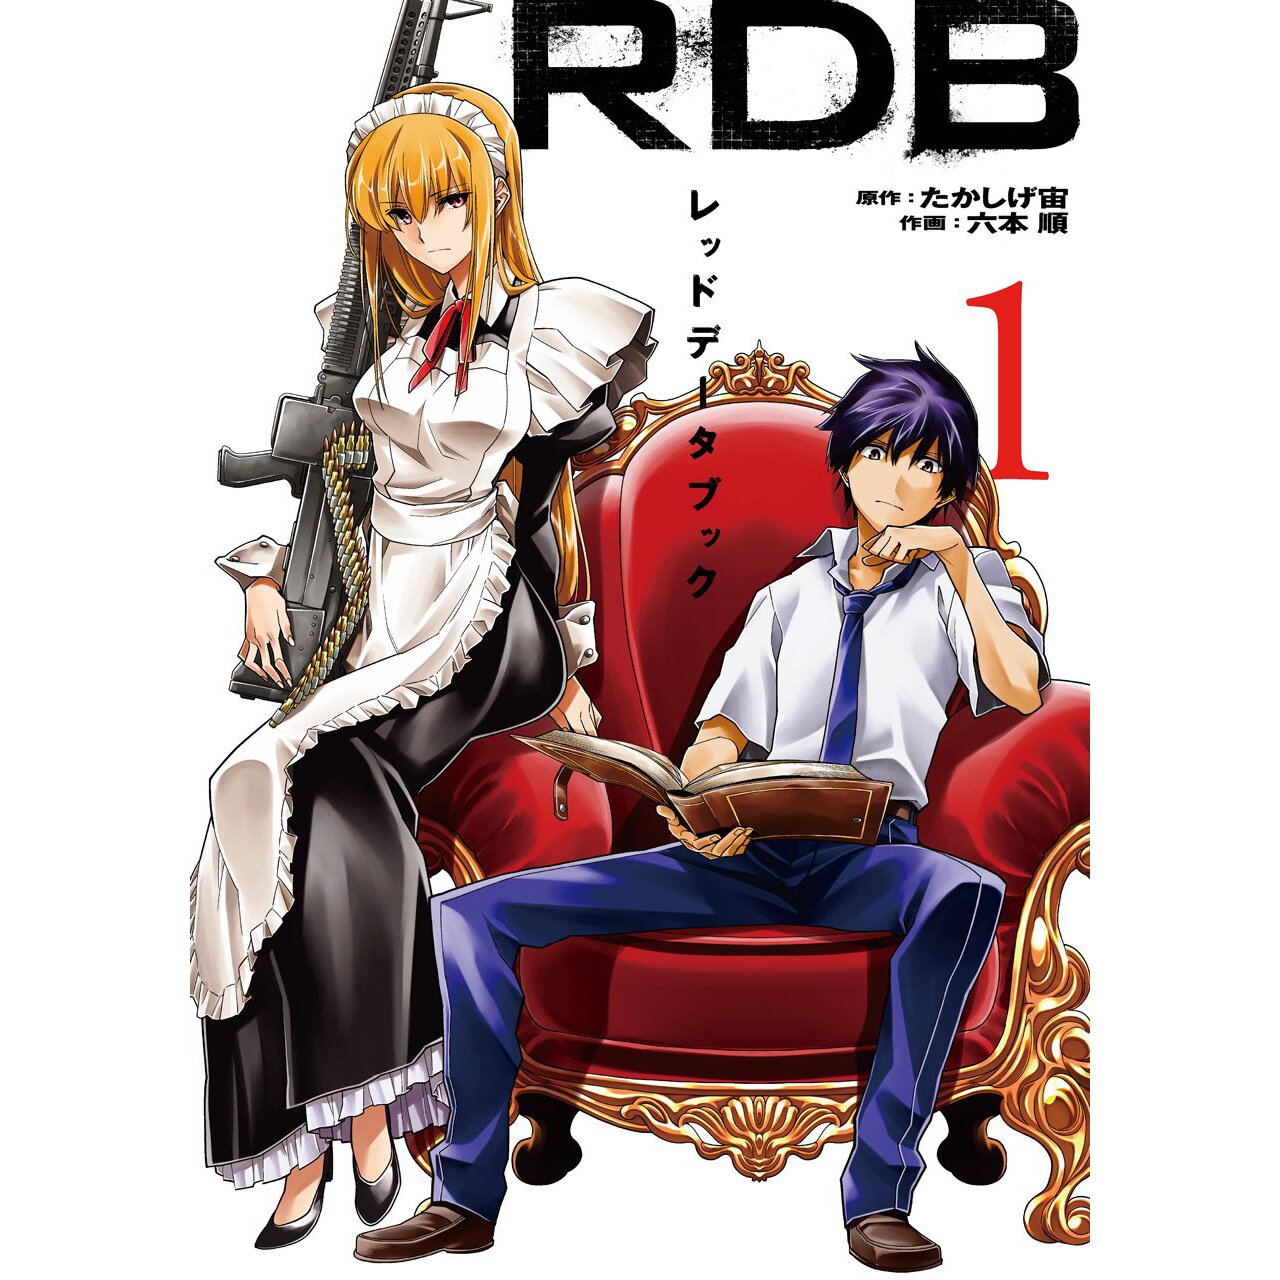 Red data book manga